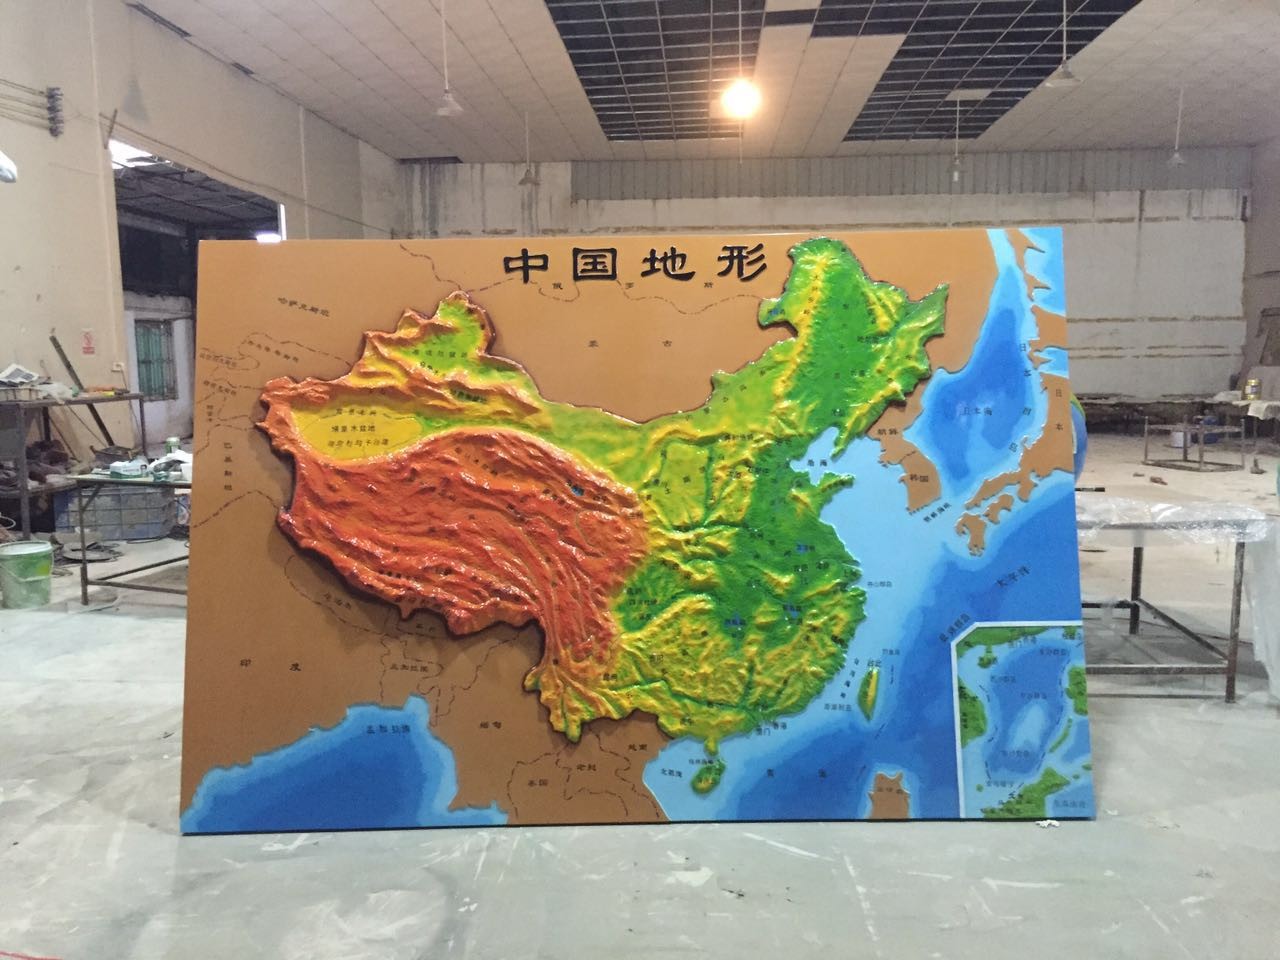 立体中国地形 - 地理园模型 - 产品展示 - 广东顺德美